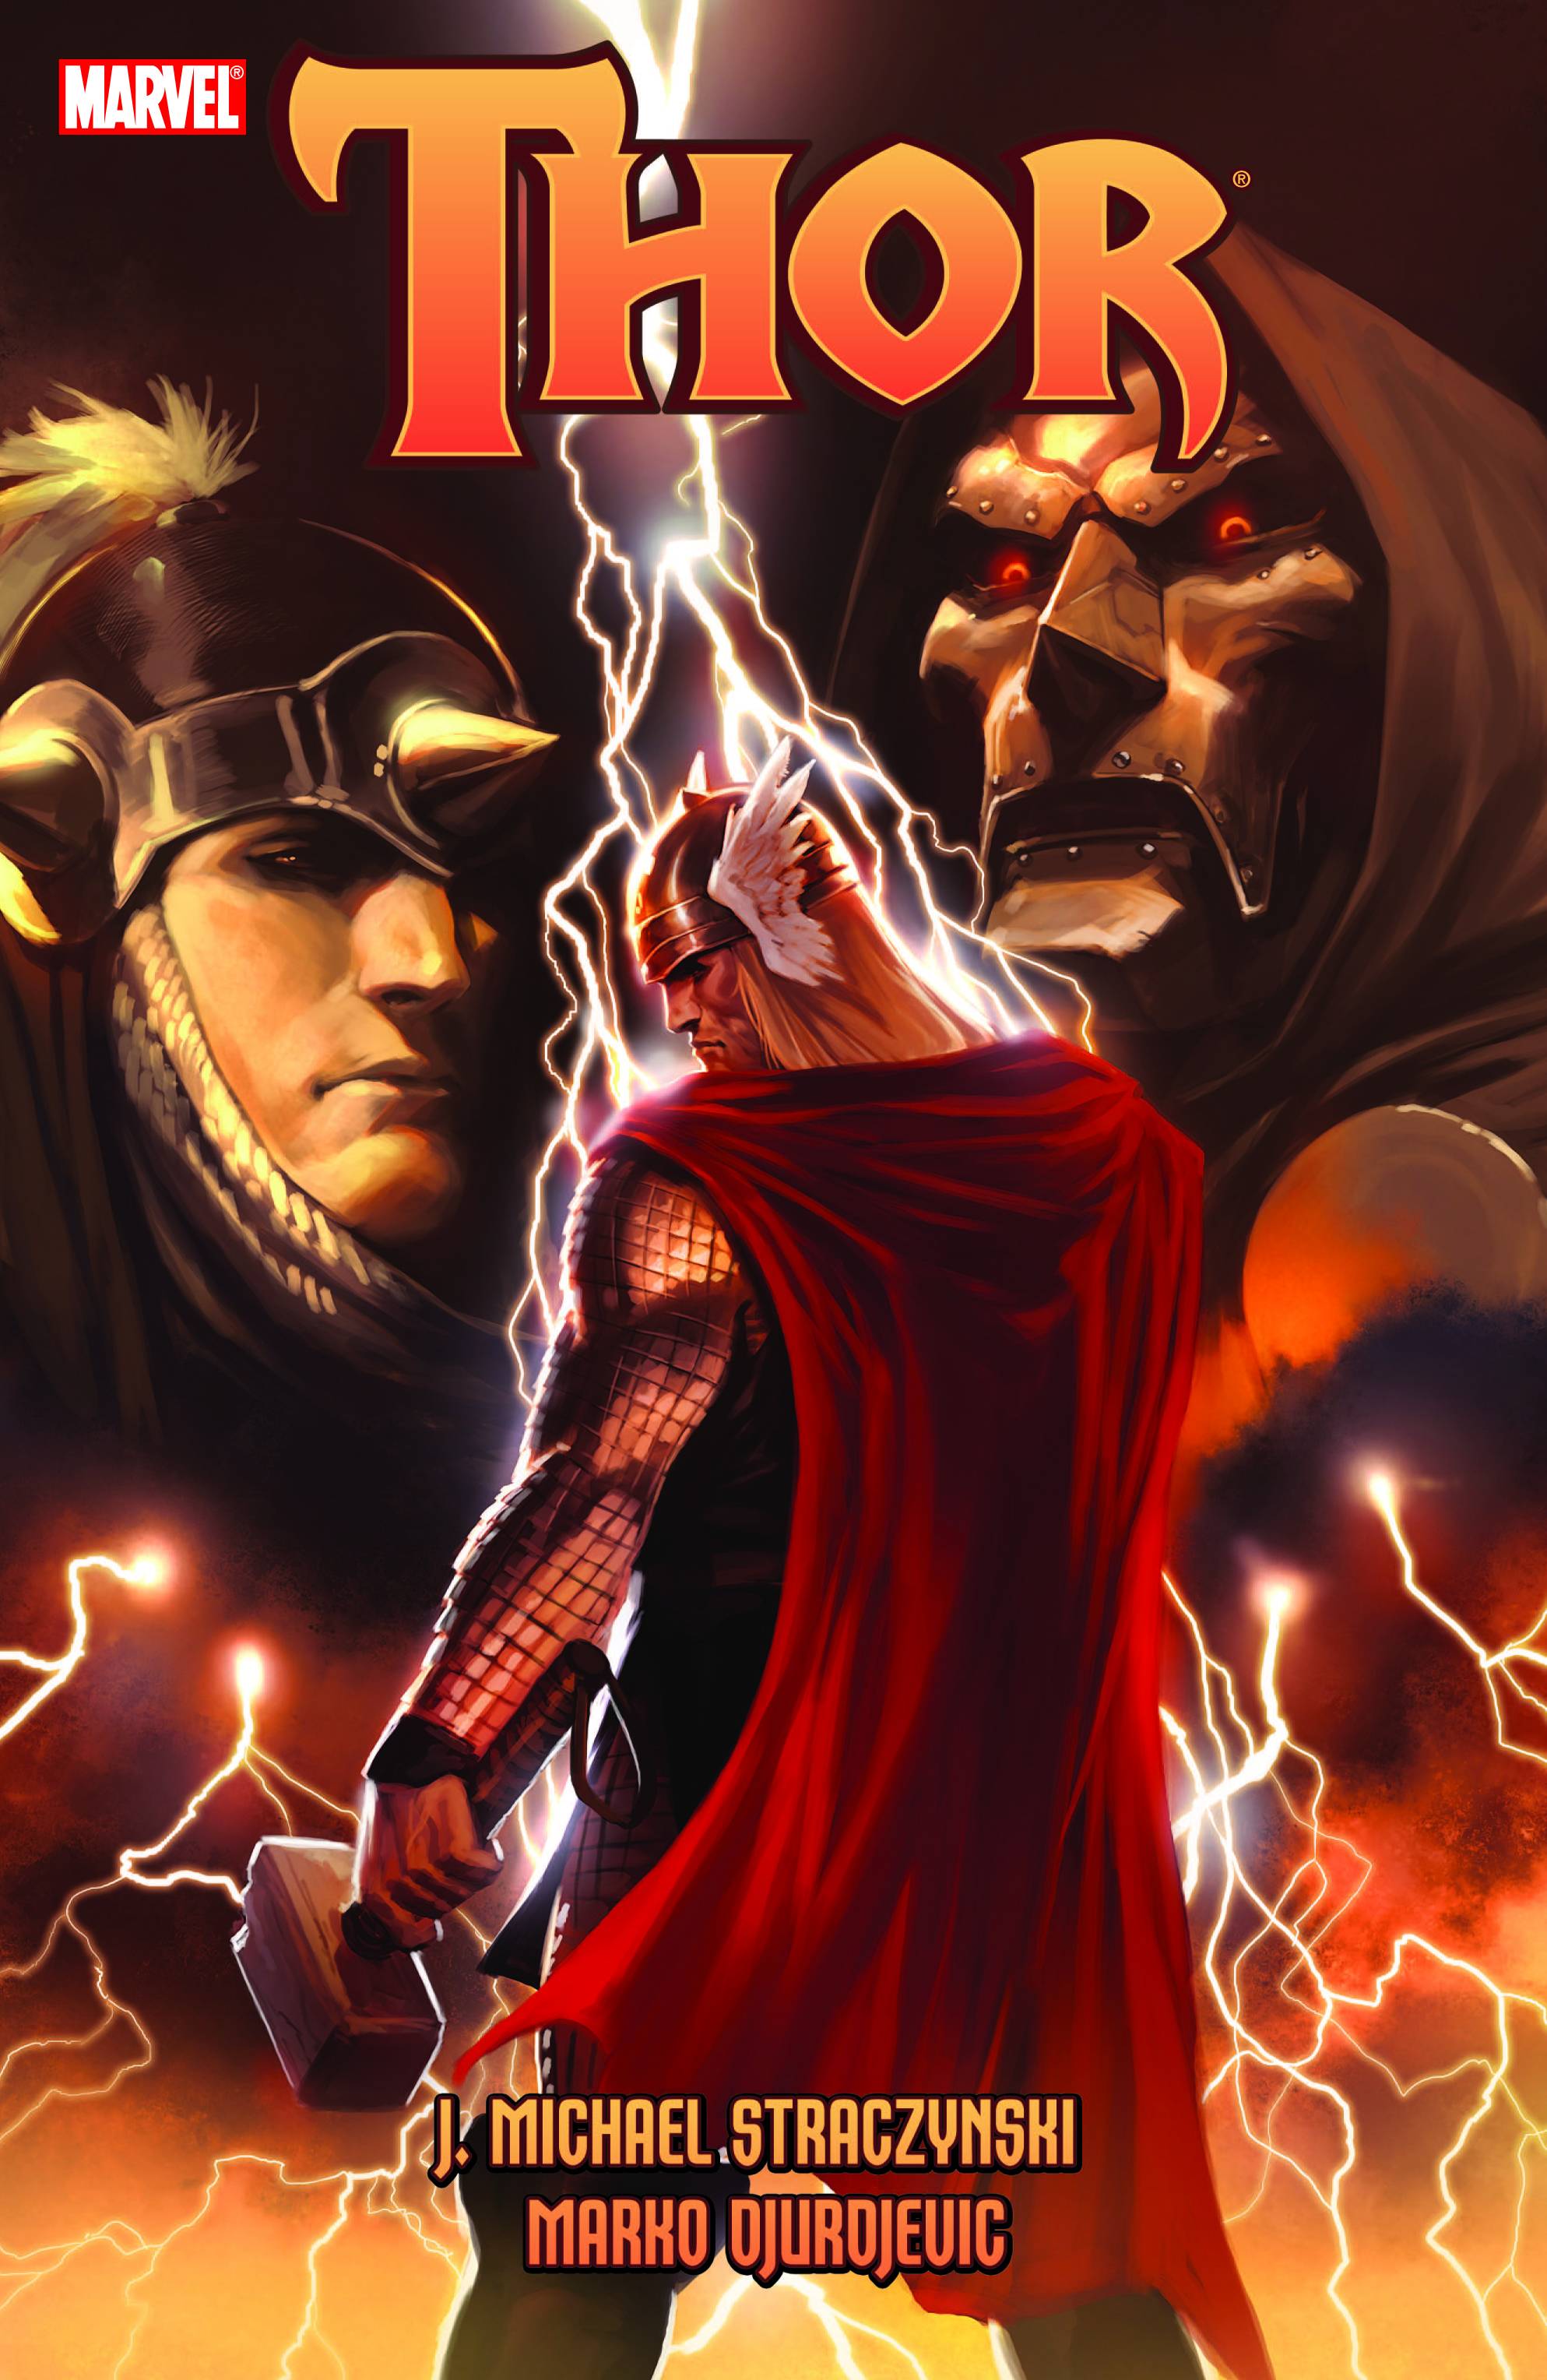 Thor by J. Michael Straczynski Volume 3 Graphic Novel